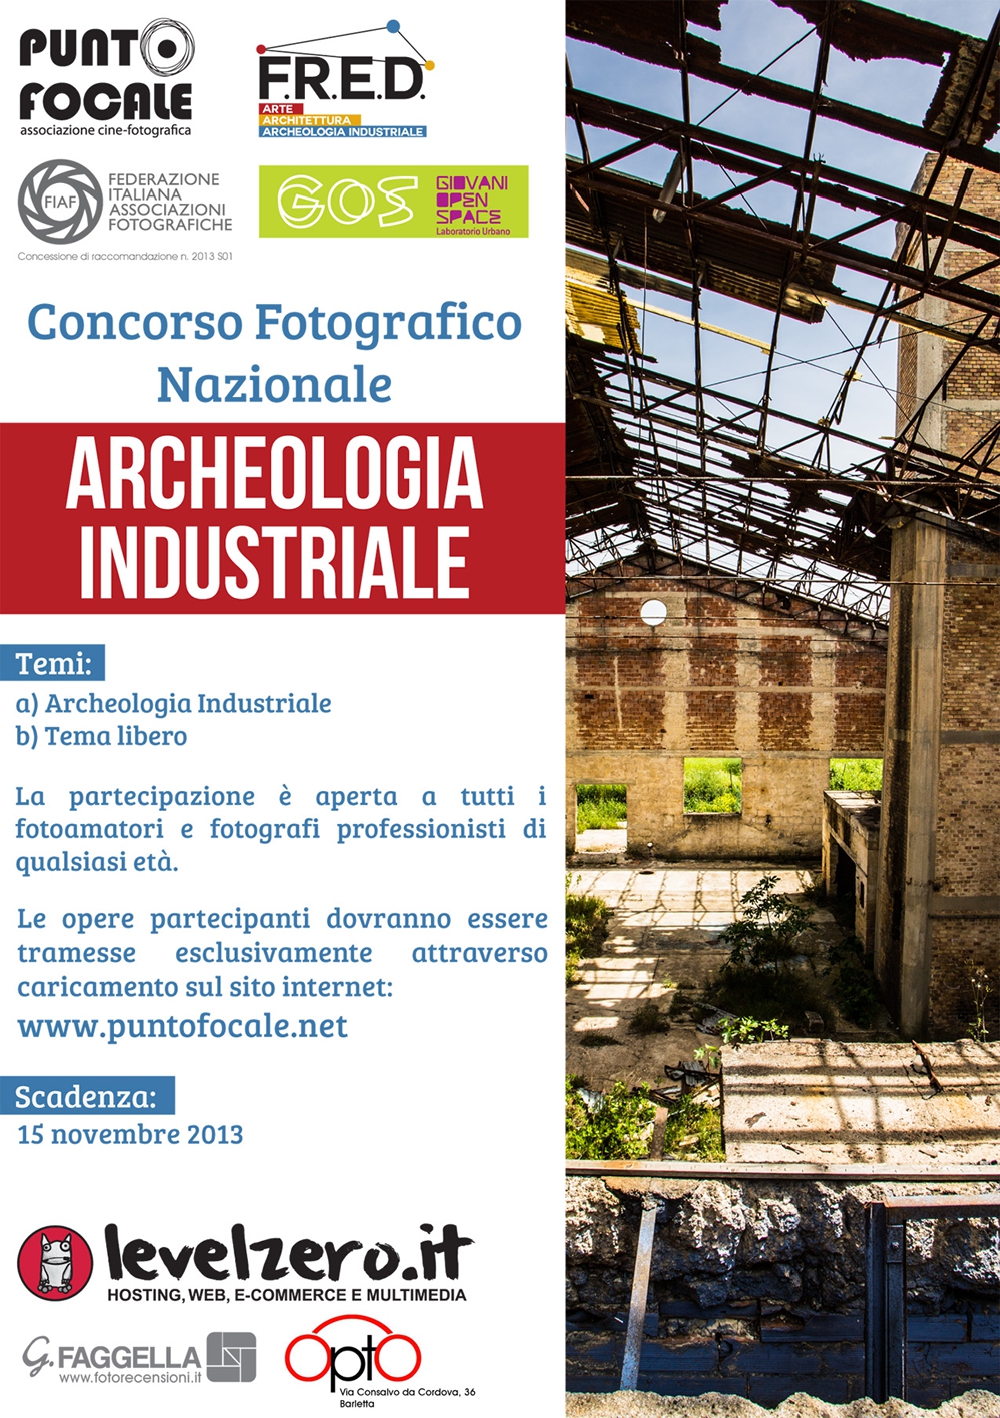 Concorso Fotografico Nazionale "Archeologia Industriale"